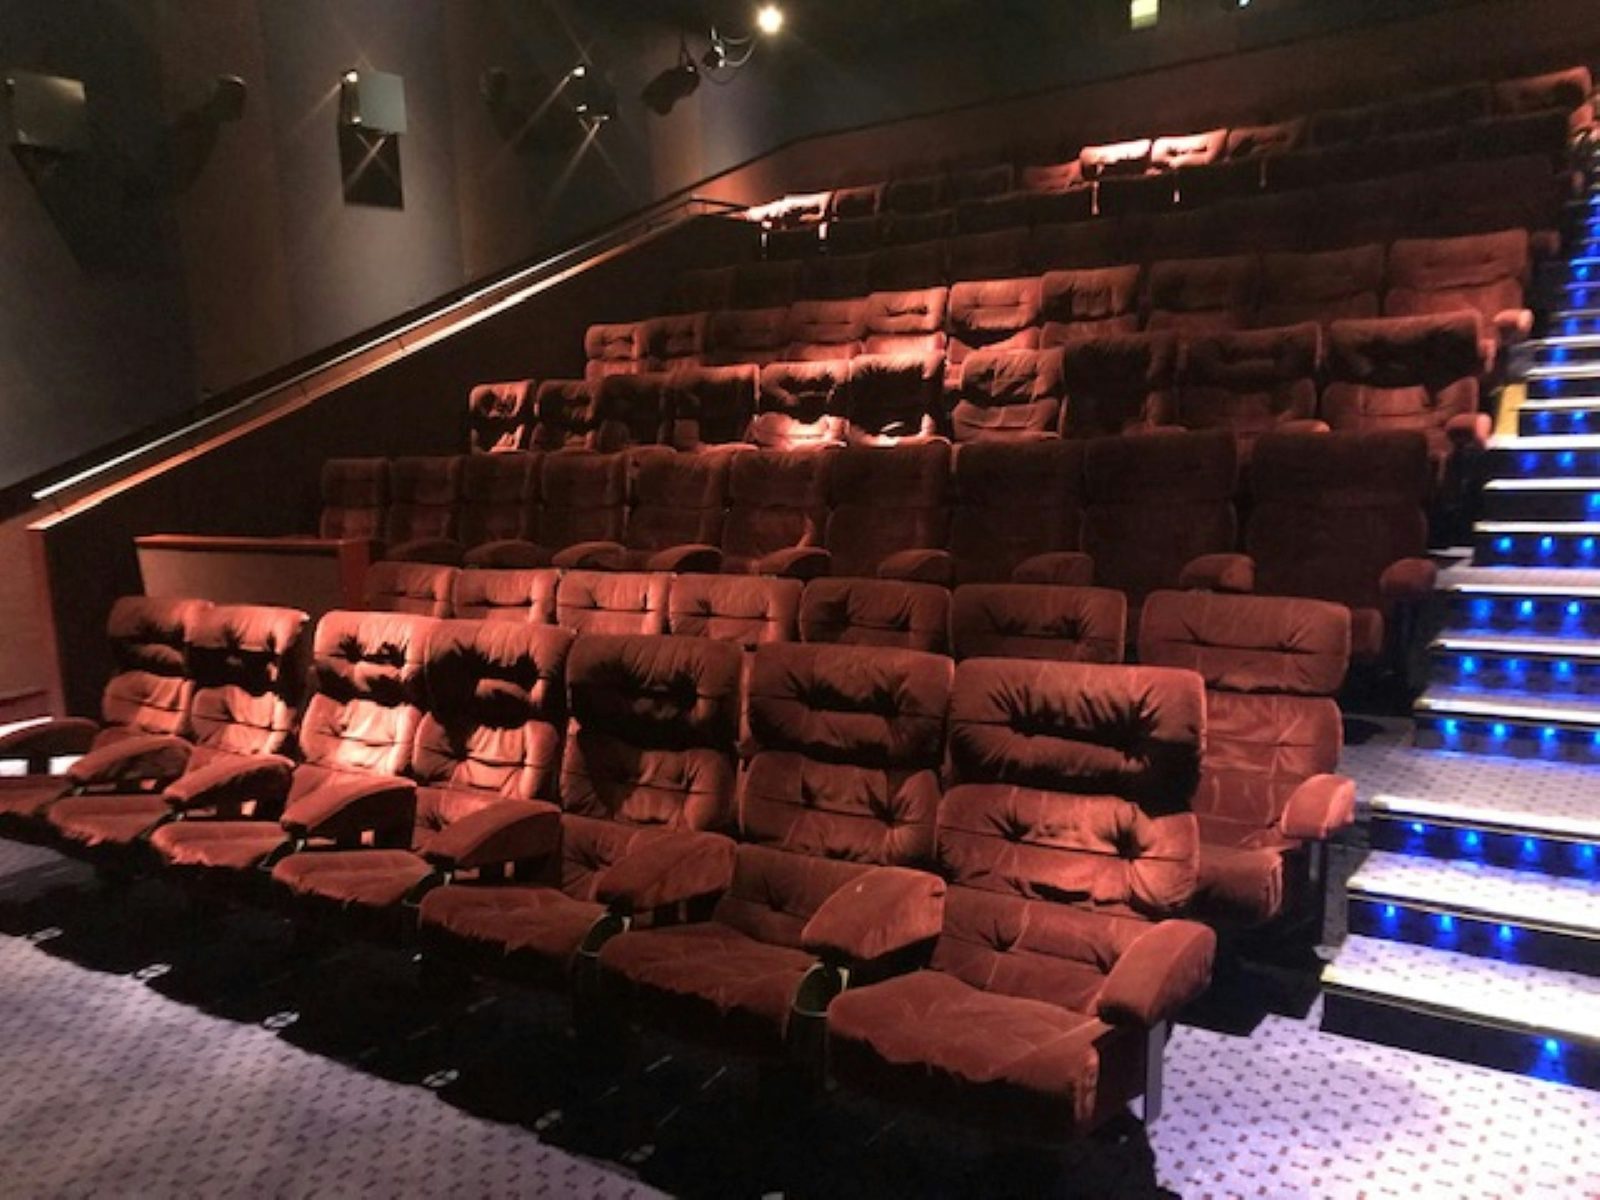 Vue Westfield London  Cinemas in Shepherd's Bush, London